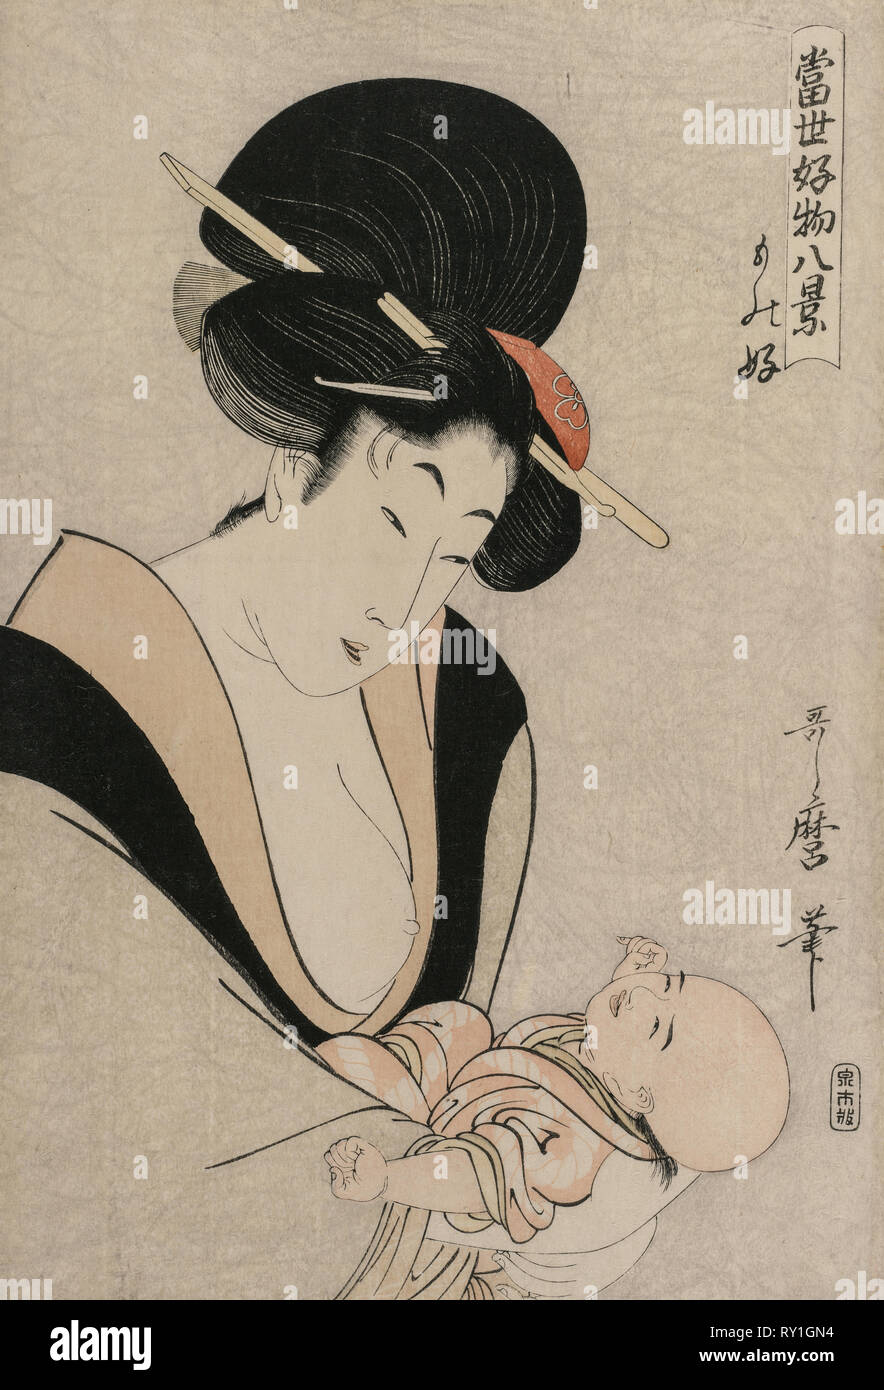 Fond des choses de la série de huit vues de choses préférées du monde d'aujourd'hui, fin des années 1790. Kitagawa Utamaro (1753 ?-1806, Japonais). Gravure sur bois en couleur ; feuille : 36,4 x 40,8 cm (14 5/16 x 16 1/16 po Banque D'Images